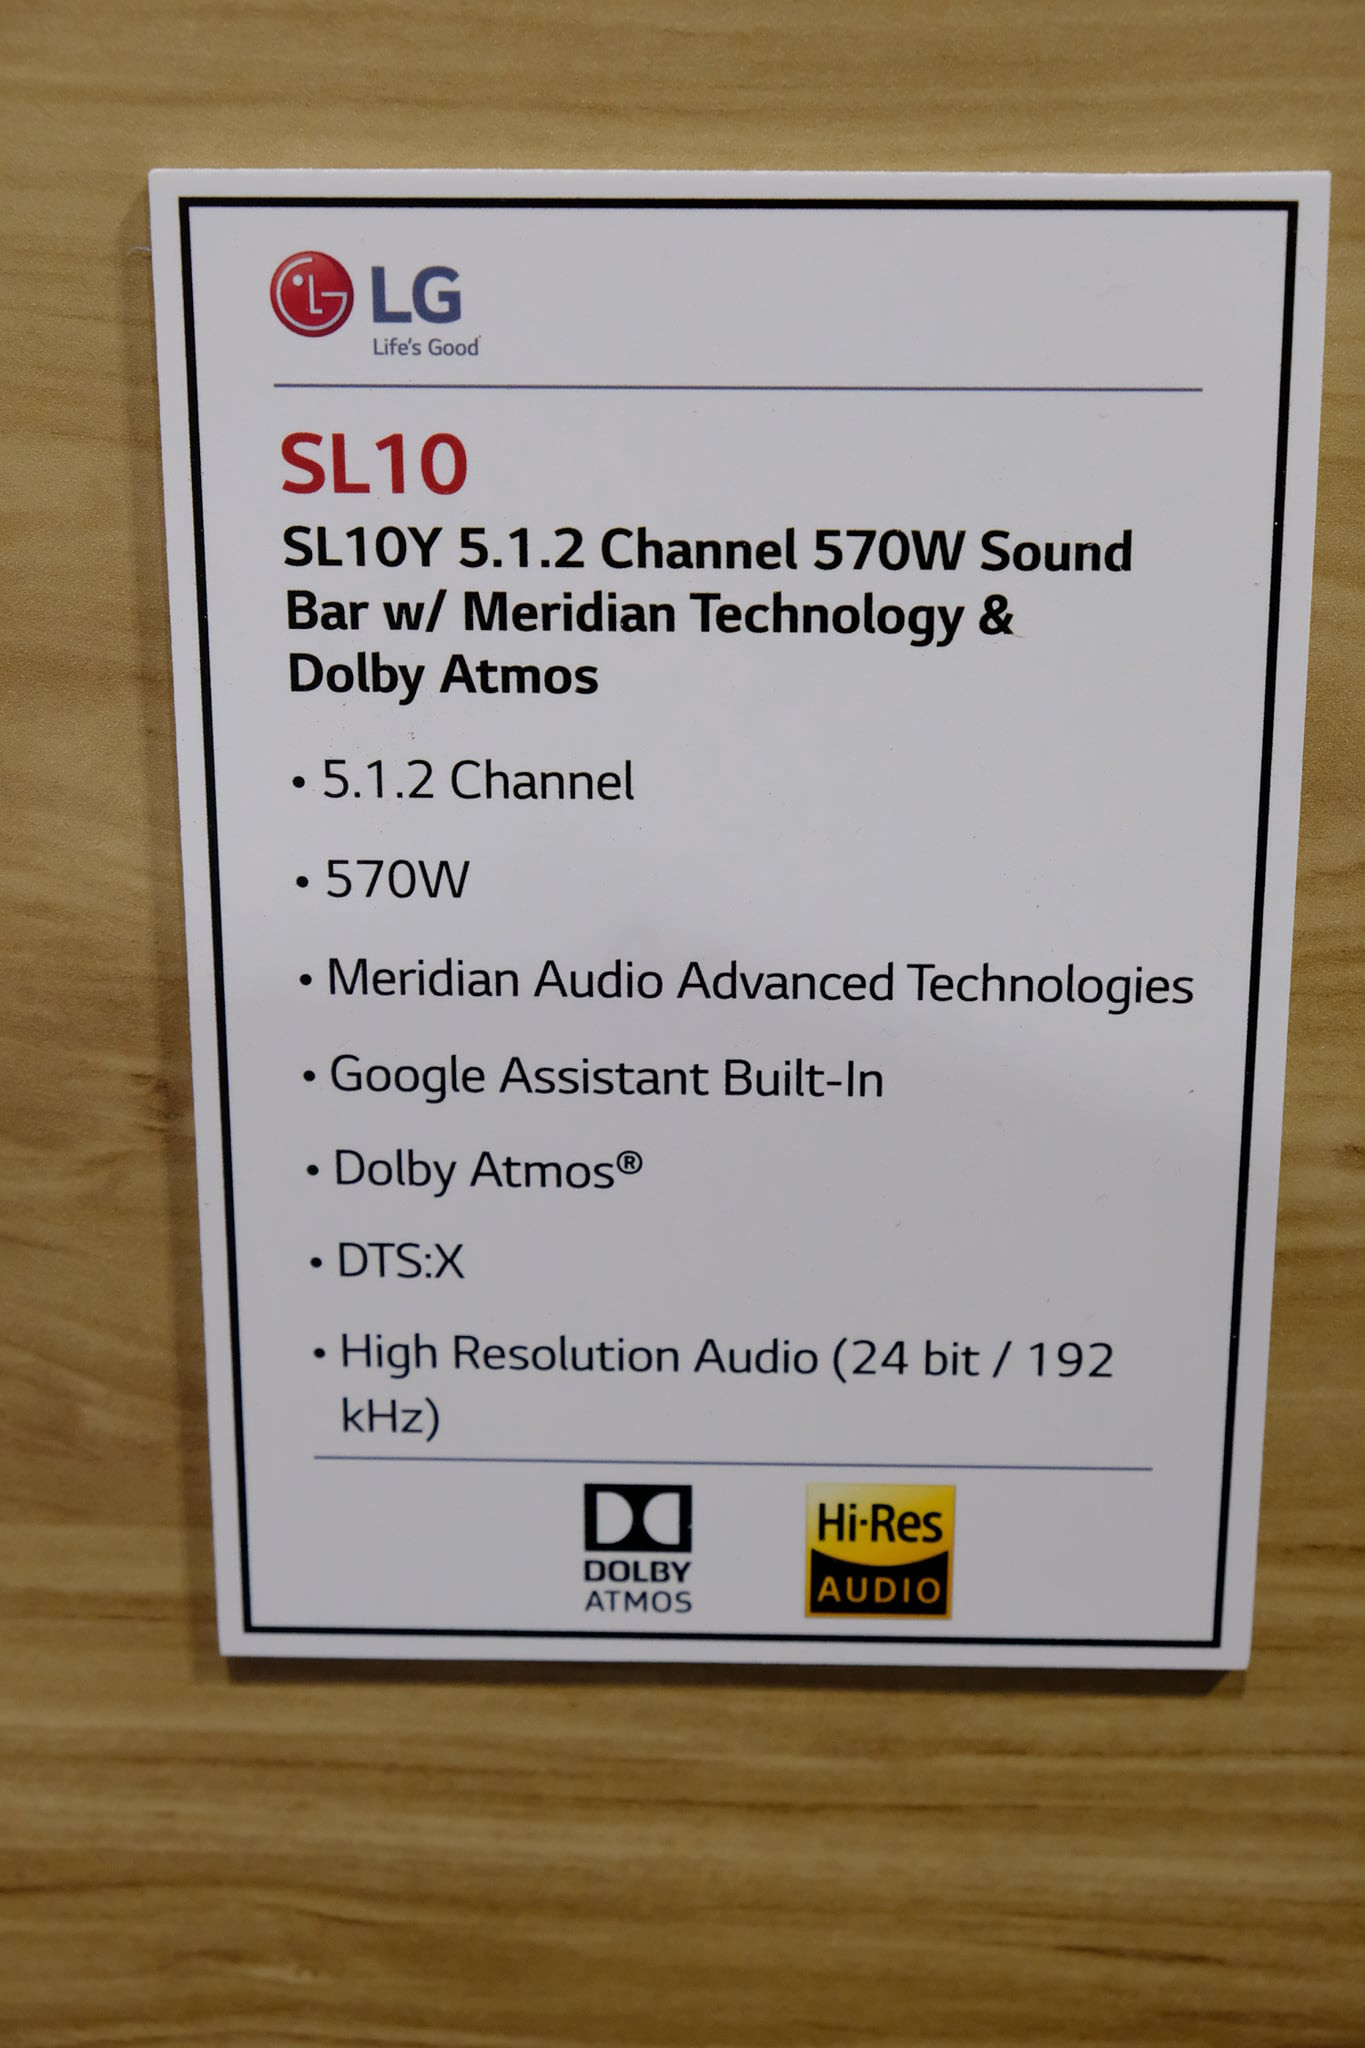 LG SL10Y 5.1.2 Channel 570W Sound Bar Specs